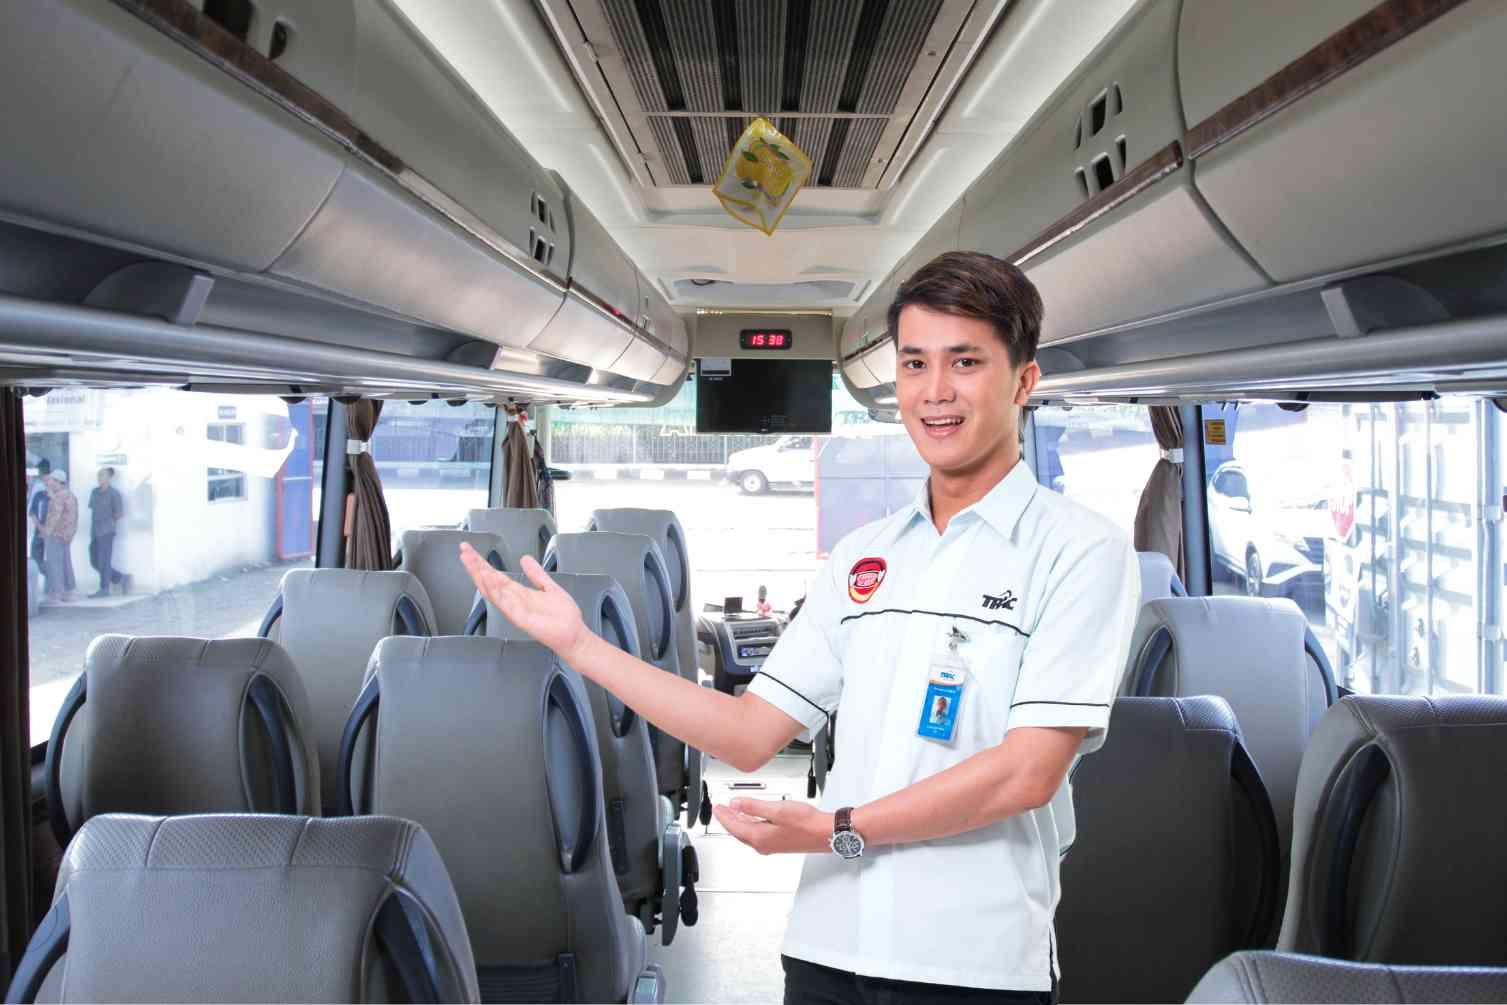 Selain Fasilitas, Kualitas Pengemudi juga Penting diperhatikan saat Sewa Bus